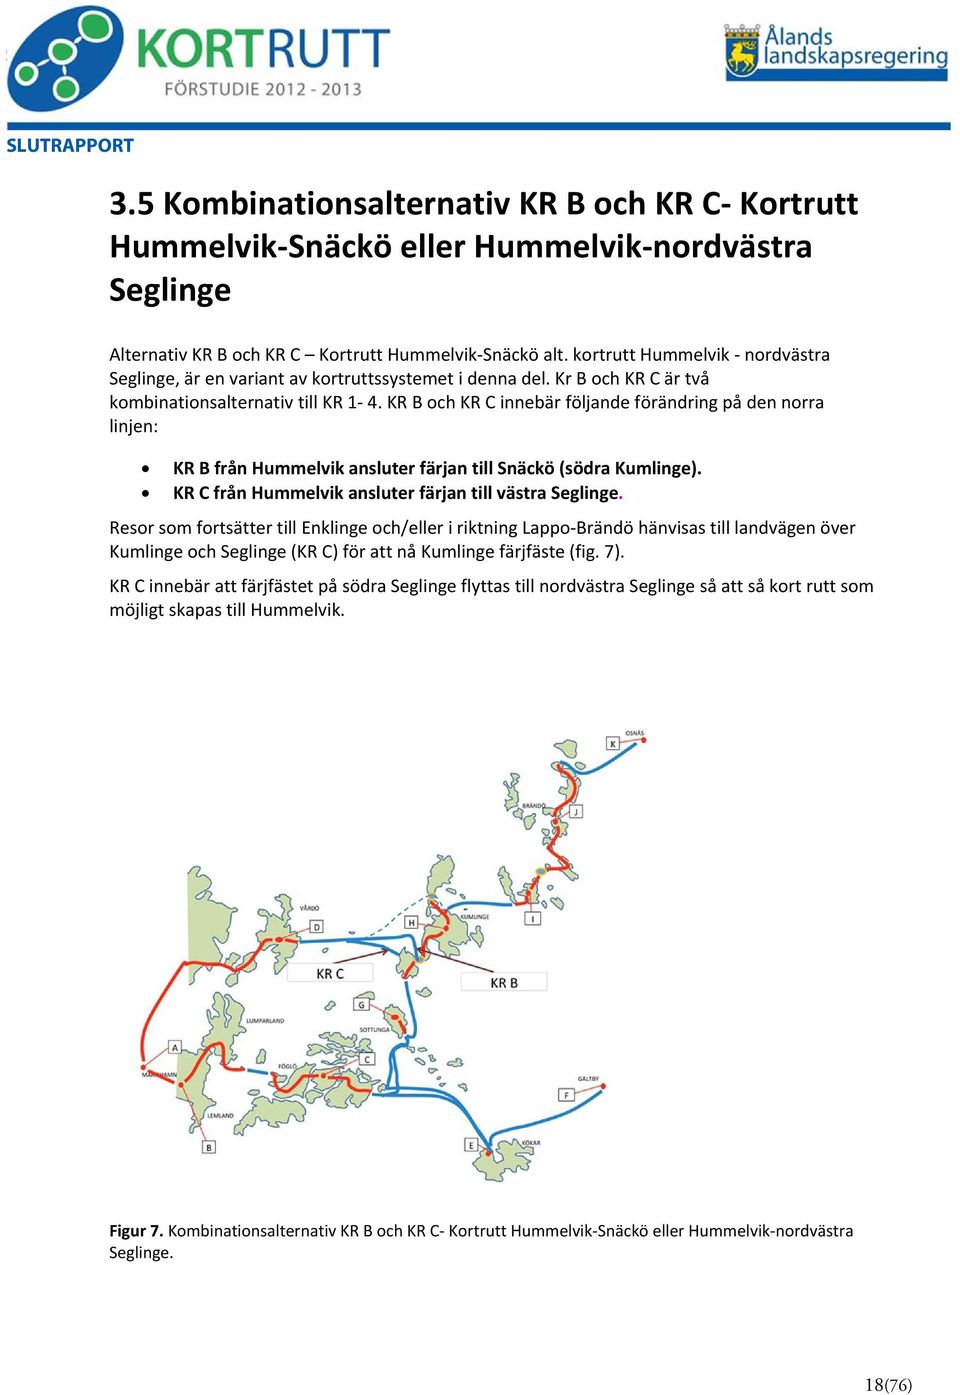 KR B och KR C innebär följande förändring på den norra linjen: KR B från Hummelvik ansluter färjan till Snäckö (södra Kumlinge). KR C från Hummelvik ansluter färjan till västra Seglinge.